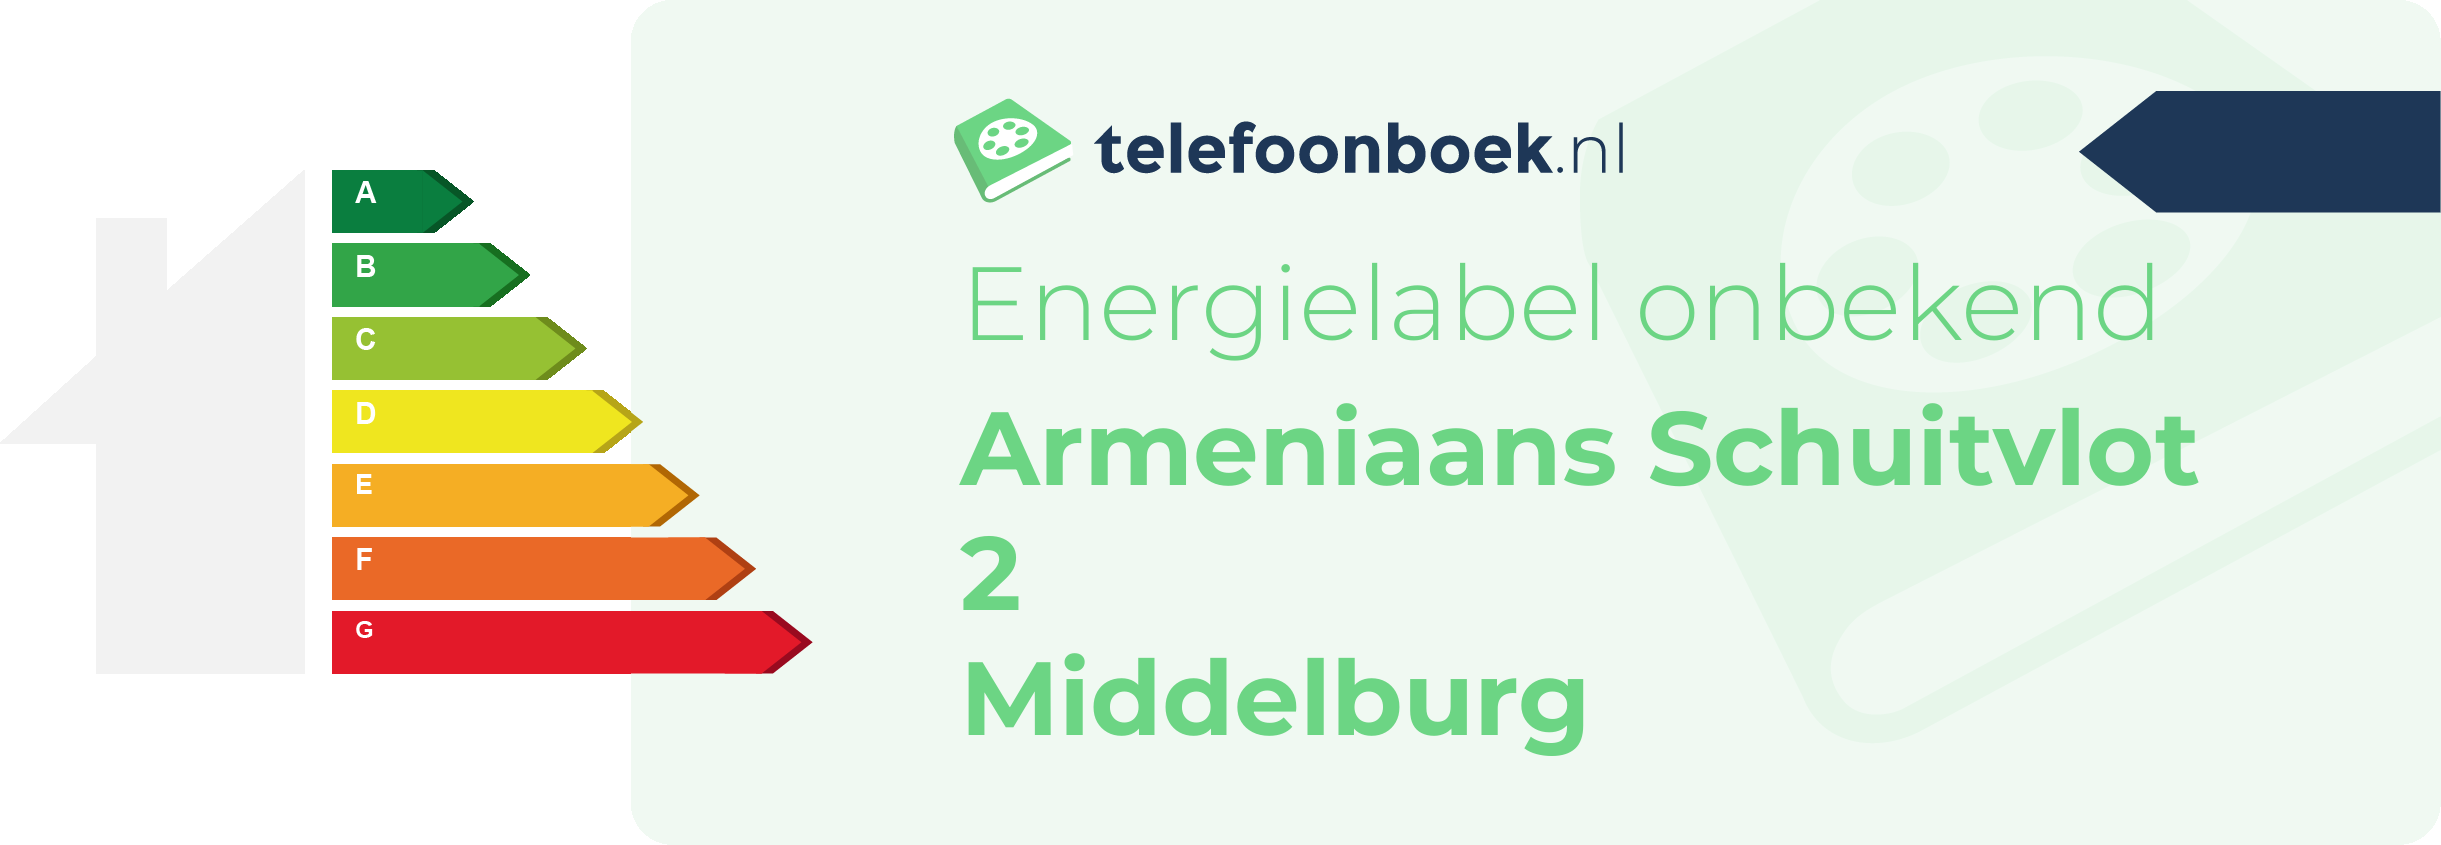 Energielabel Armeniaans Schuitvlot 2 Middelburg